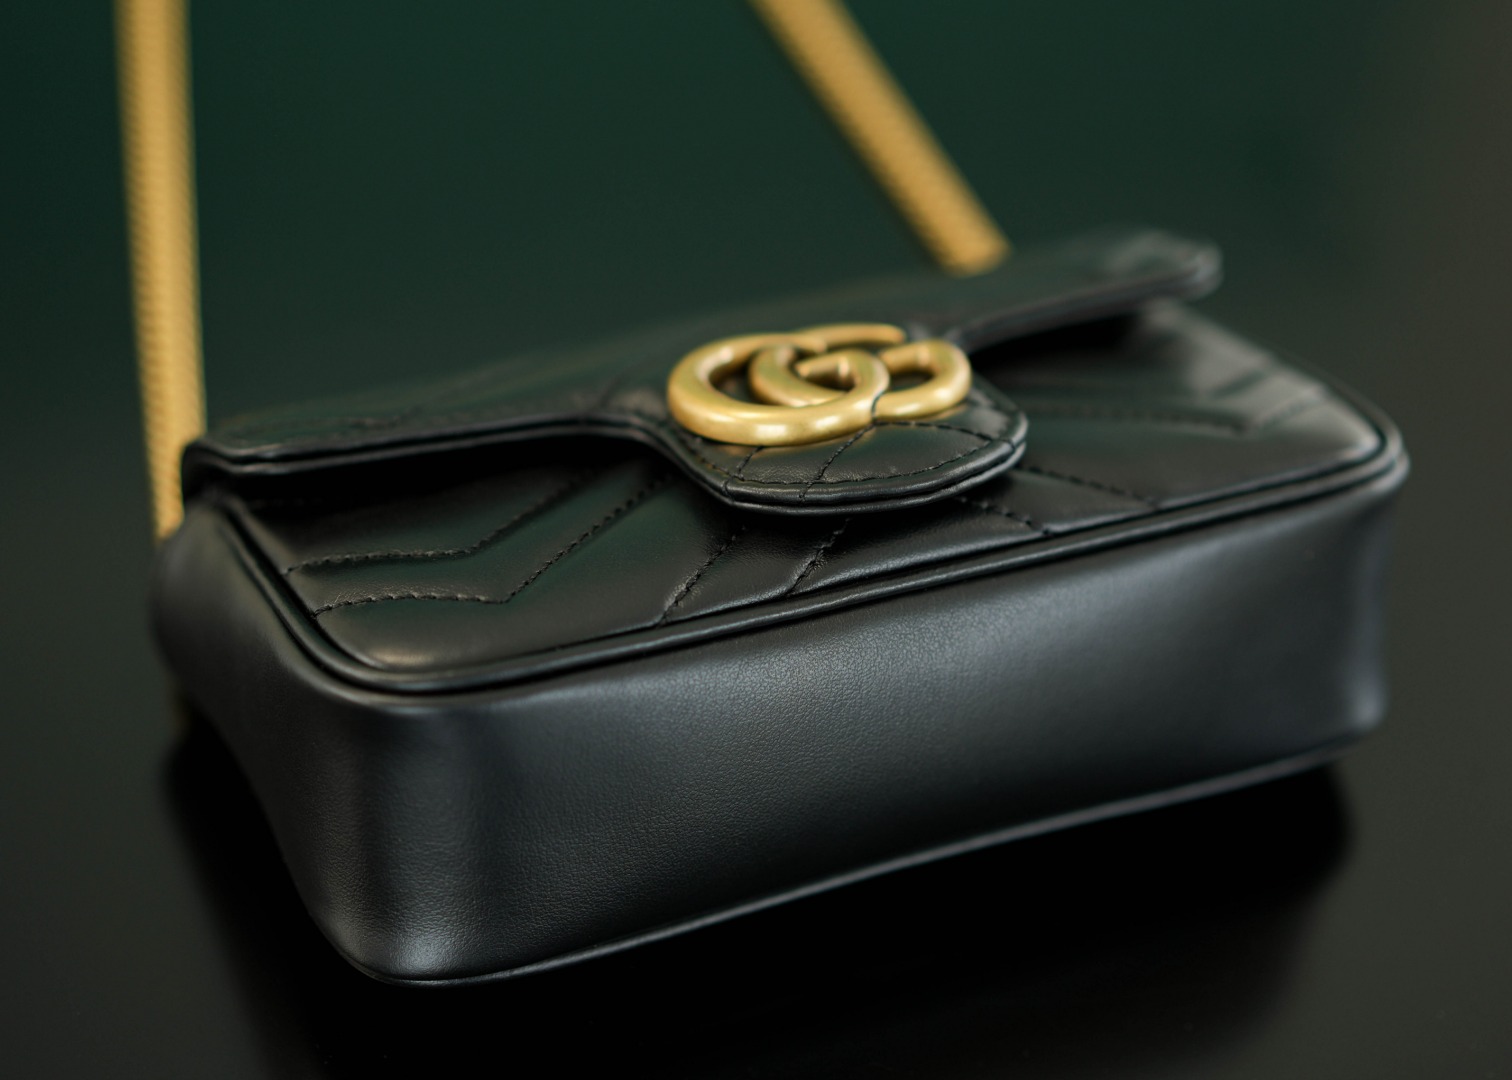 正品级Marmont系列肩背包经典款黑色mini16.5cm原厂皮全铜五金正品售价108,500GG家的